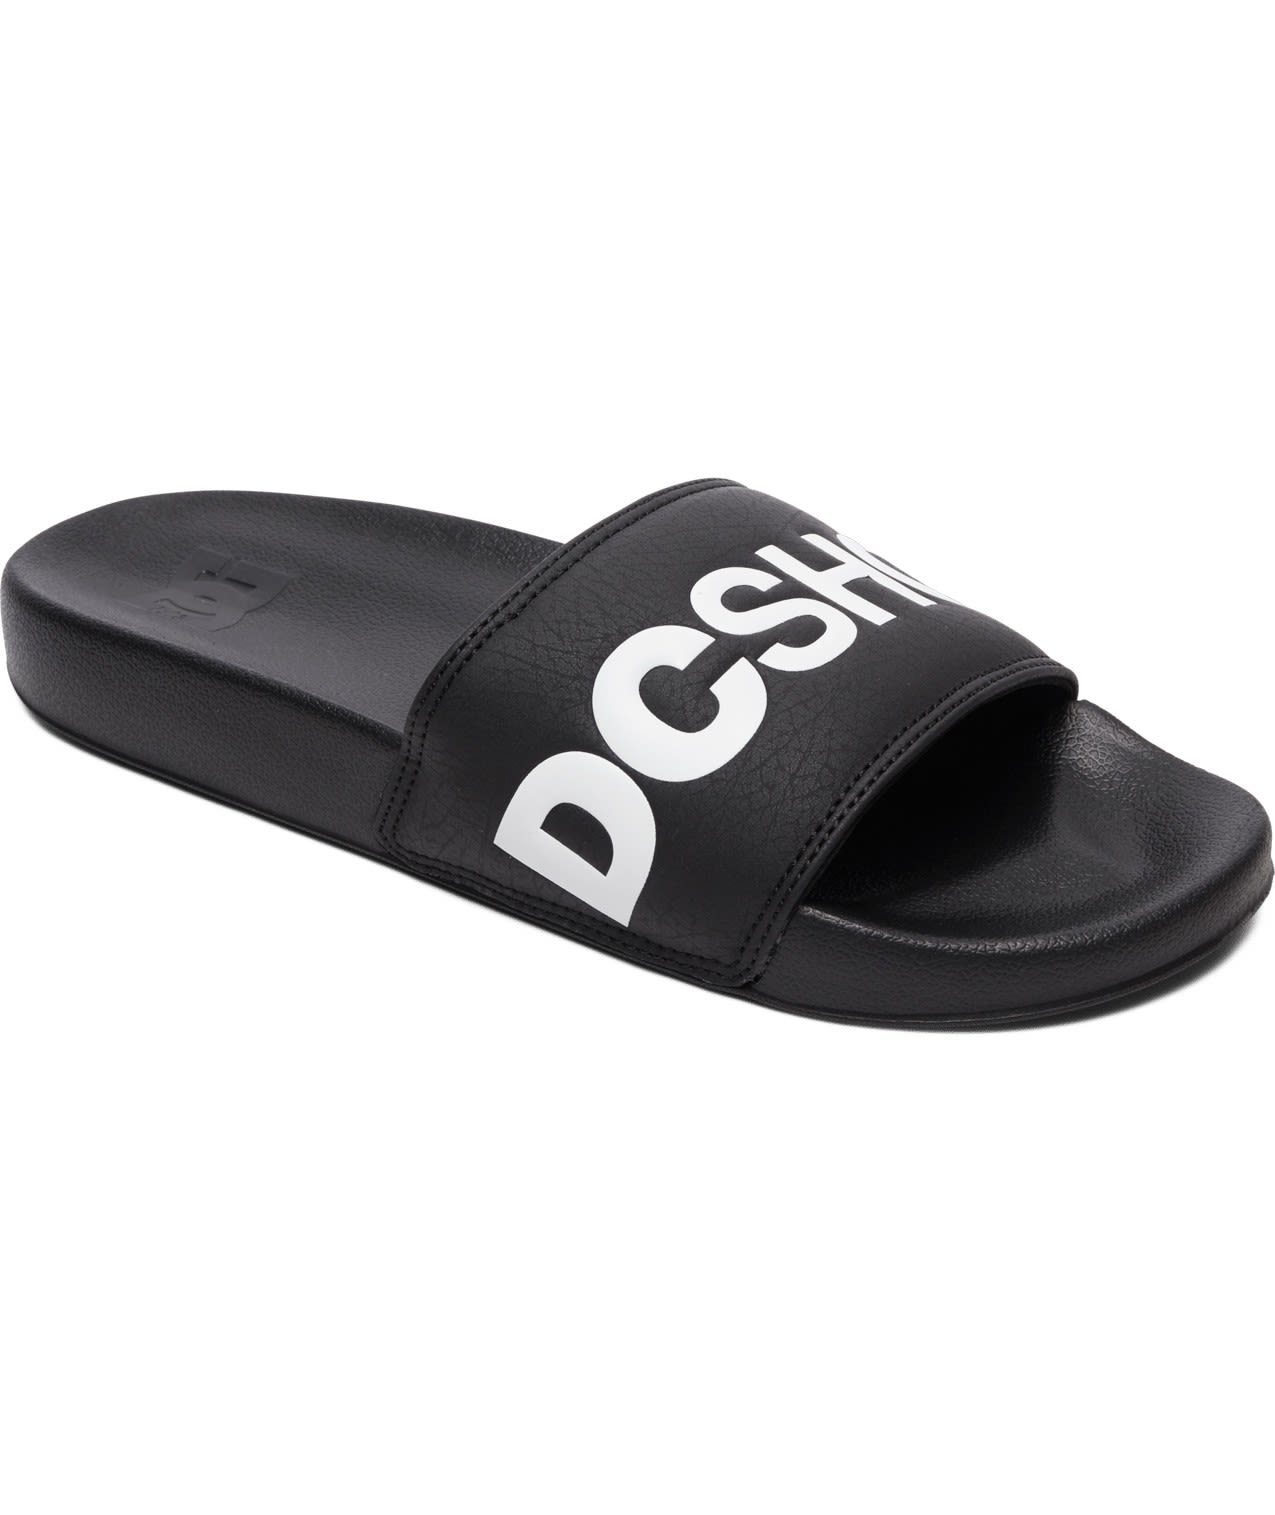 DC Shoes Dc M Dc Slide Sandal Herren Sandale Badesandale schwarz